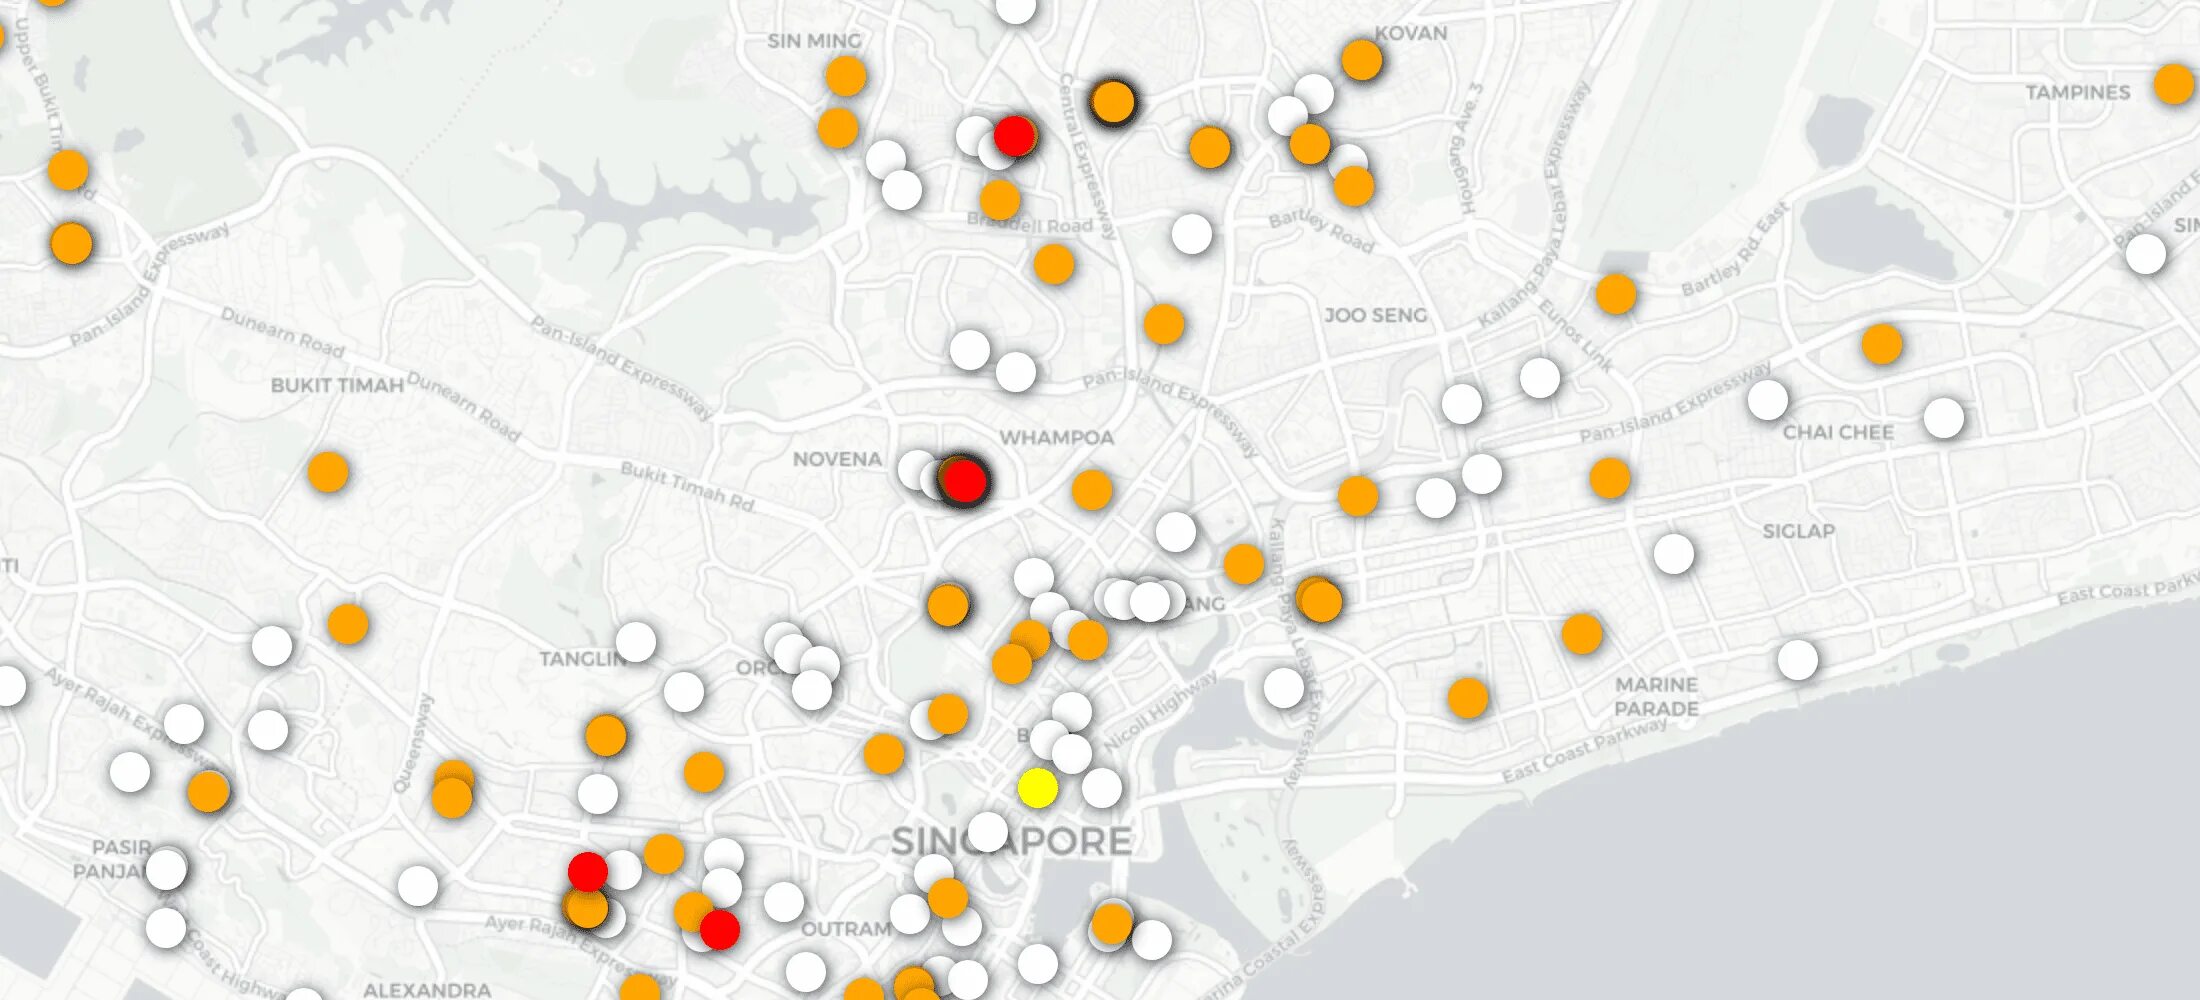 Кластеризация на карте. Кластеризация ИИ. Сингапур рыбный кластер. Сингапур it кластер. Community map